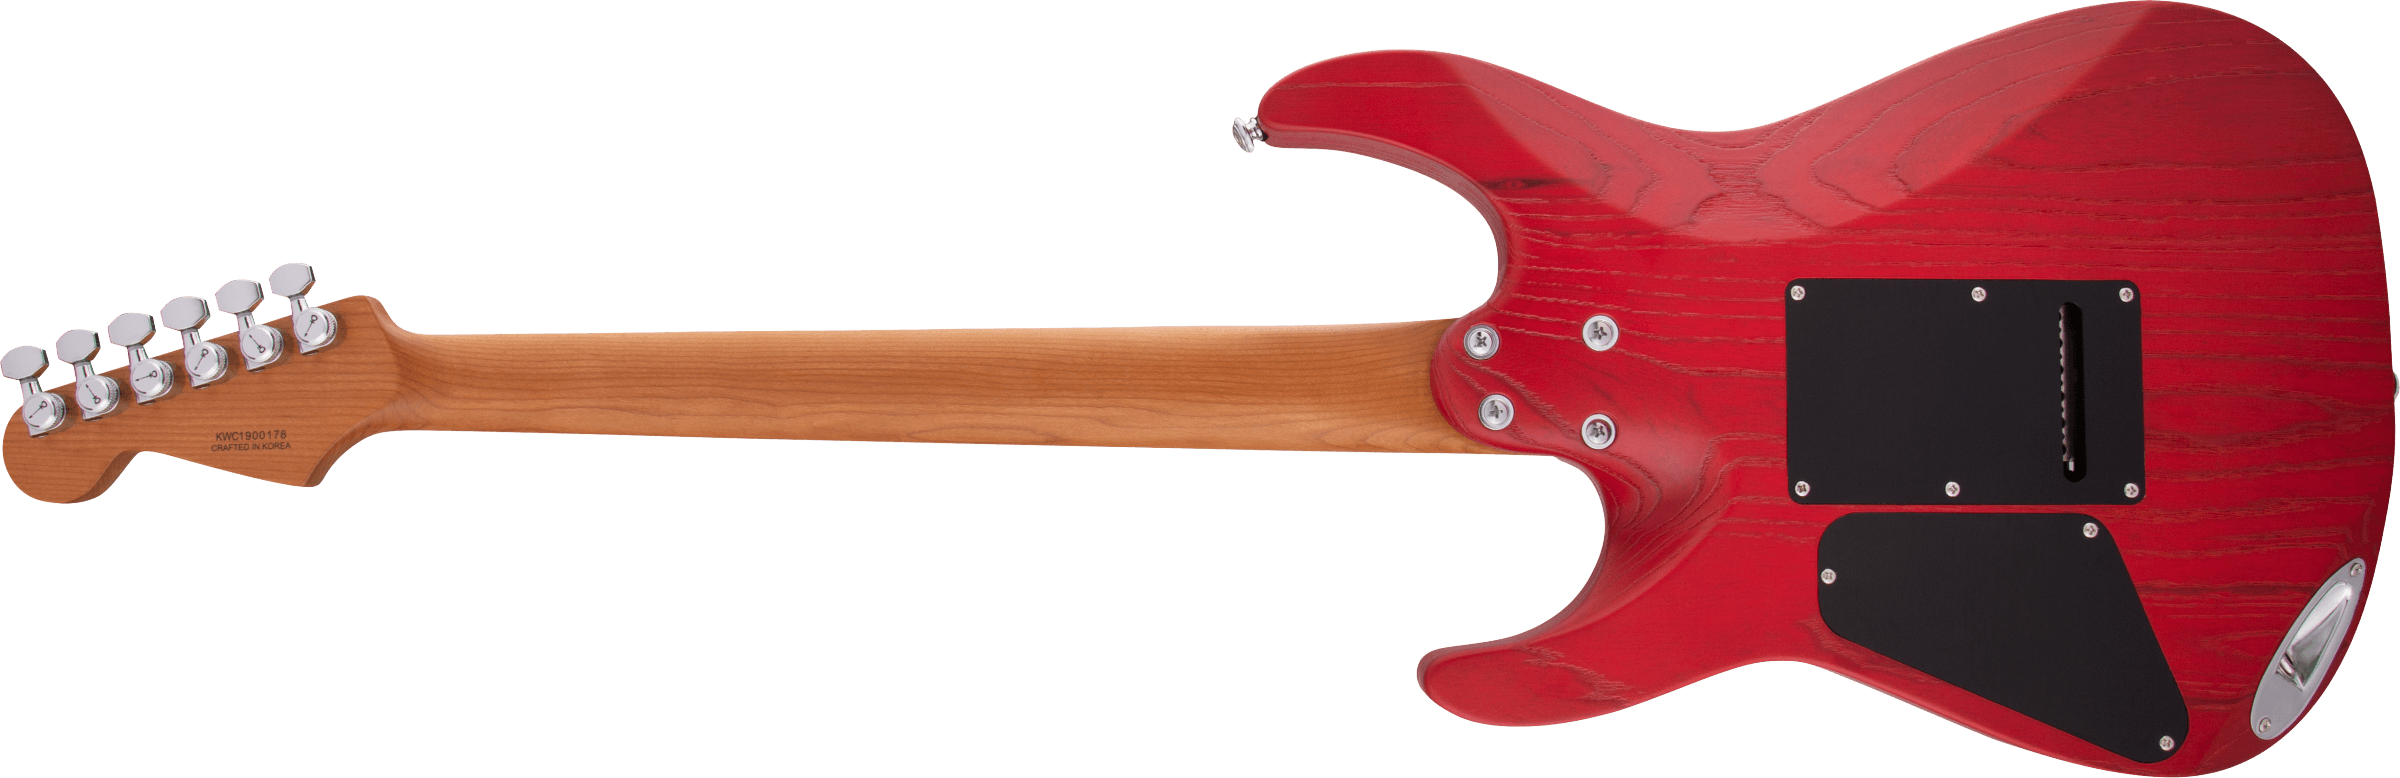 Charvel Pro-Mod DK24 HSS 2PT CM Ash Caramelized Maple Fingerboard Red Ash